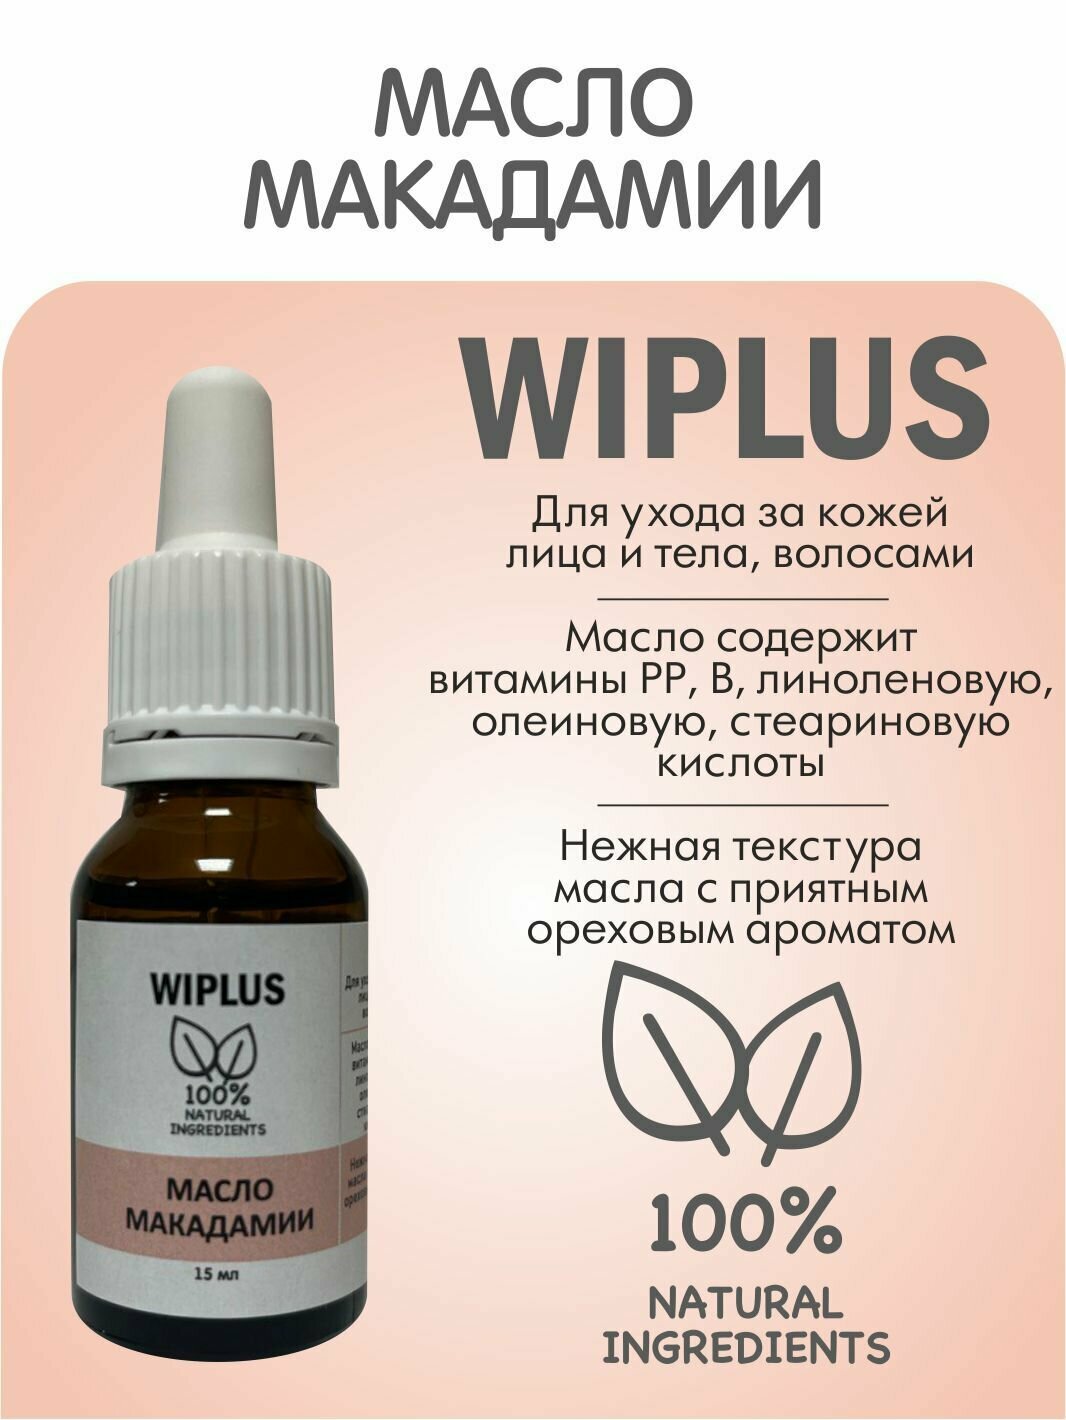 Макадамии масло нерафинированное 15 мл WIPLUS